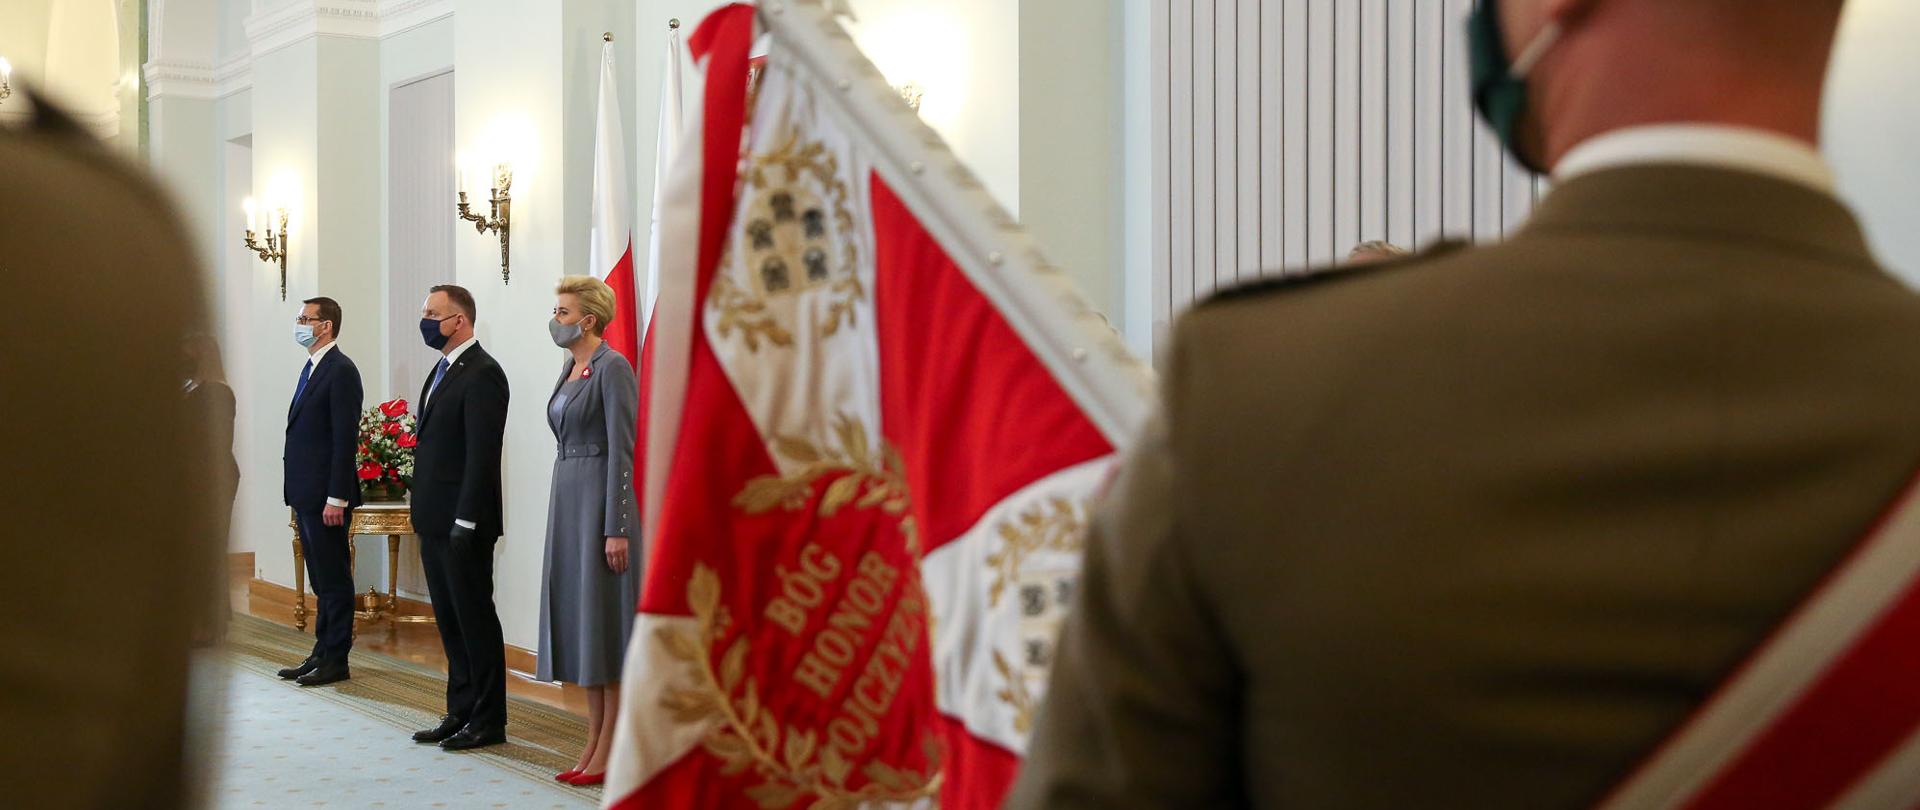 Widok zza sztandaru na stojących prezydenta Andrzeja Dudę, Agatę Dudę i premiera Mateusza Morawieckiego.